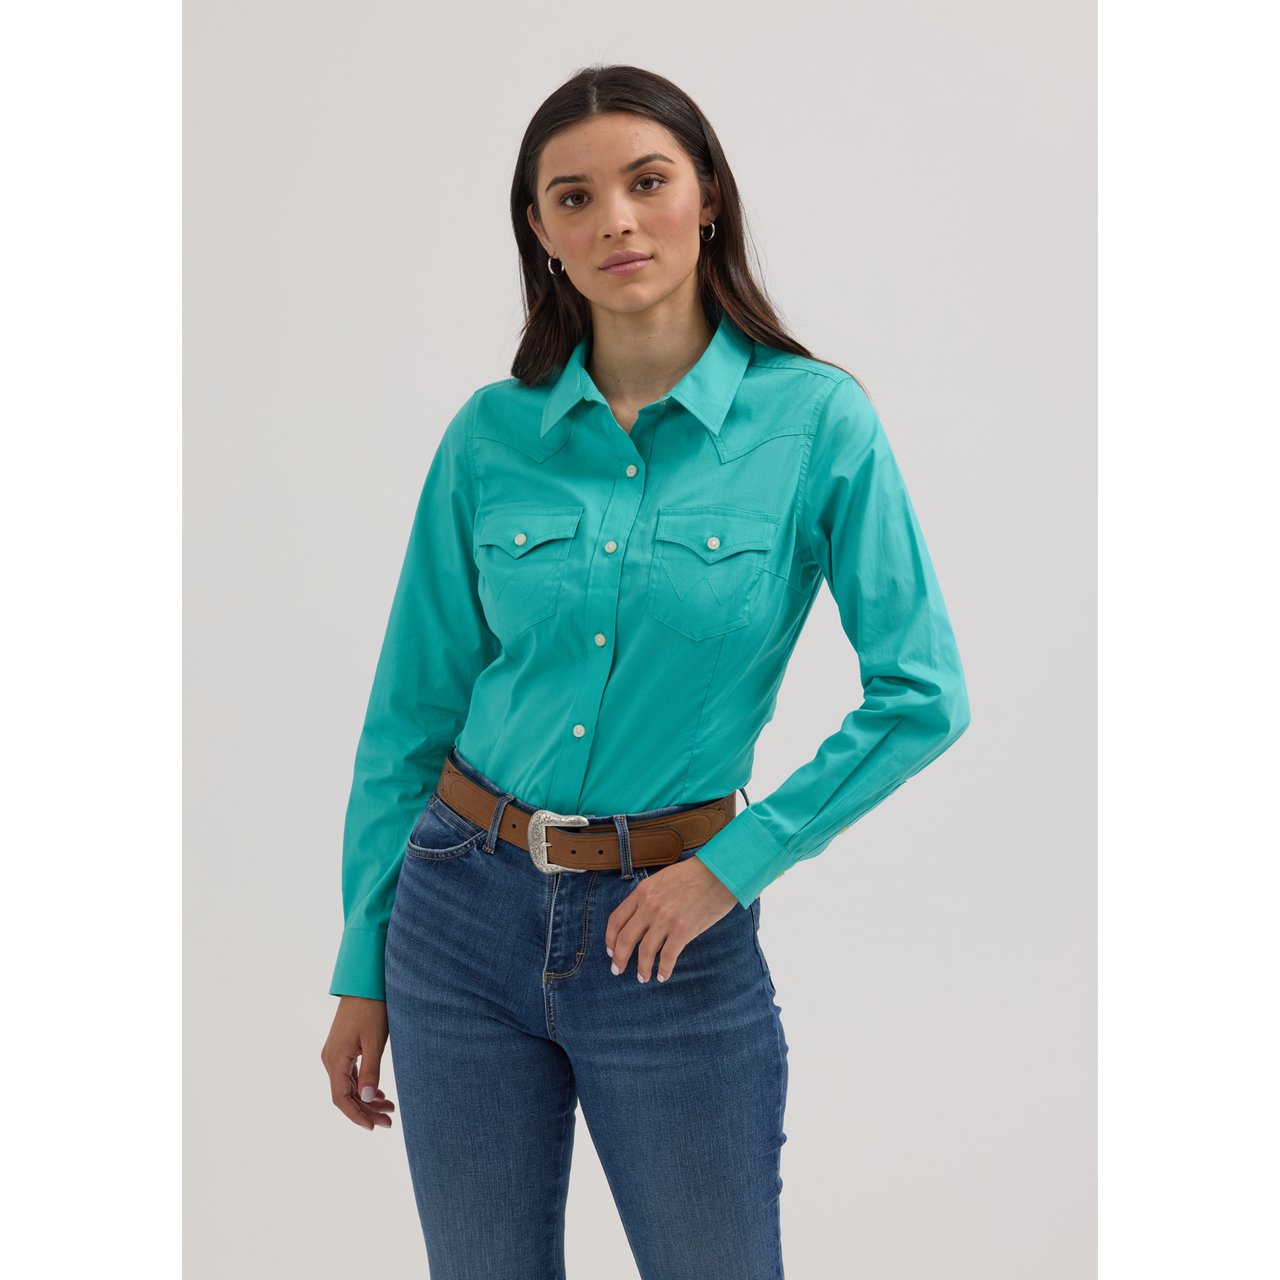 Wrangler Women's ASAP Retro Long Sleeve Shirt - Turquoise